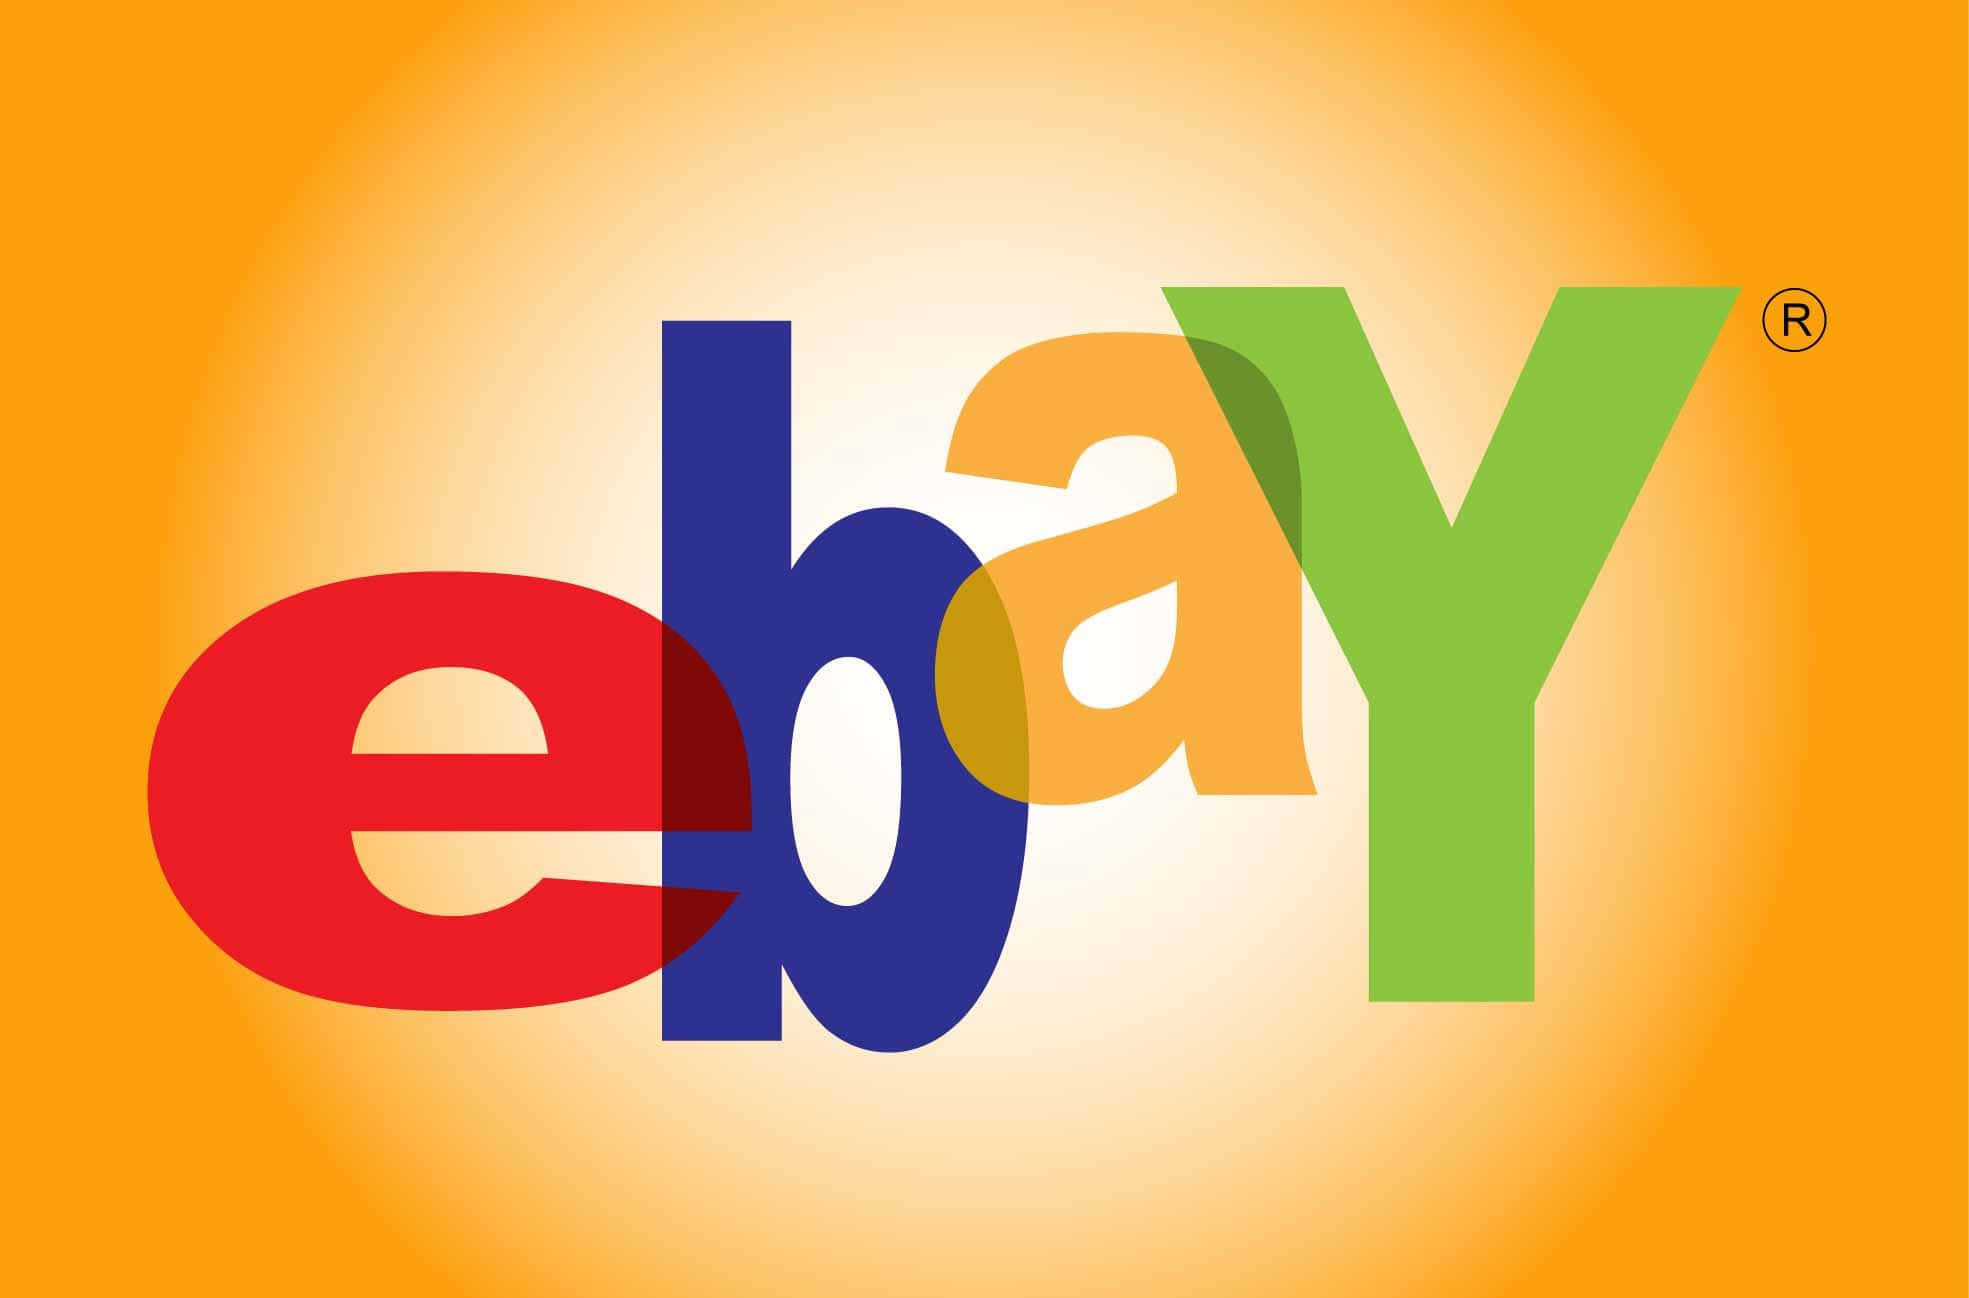 Score great deals on Ebay!